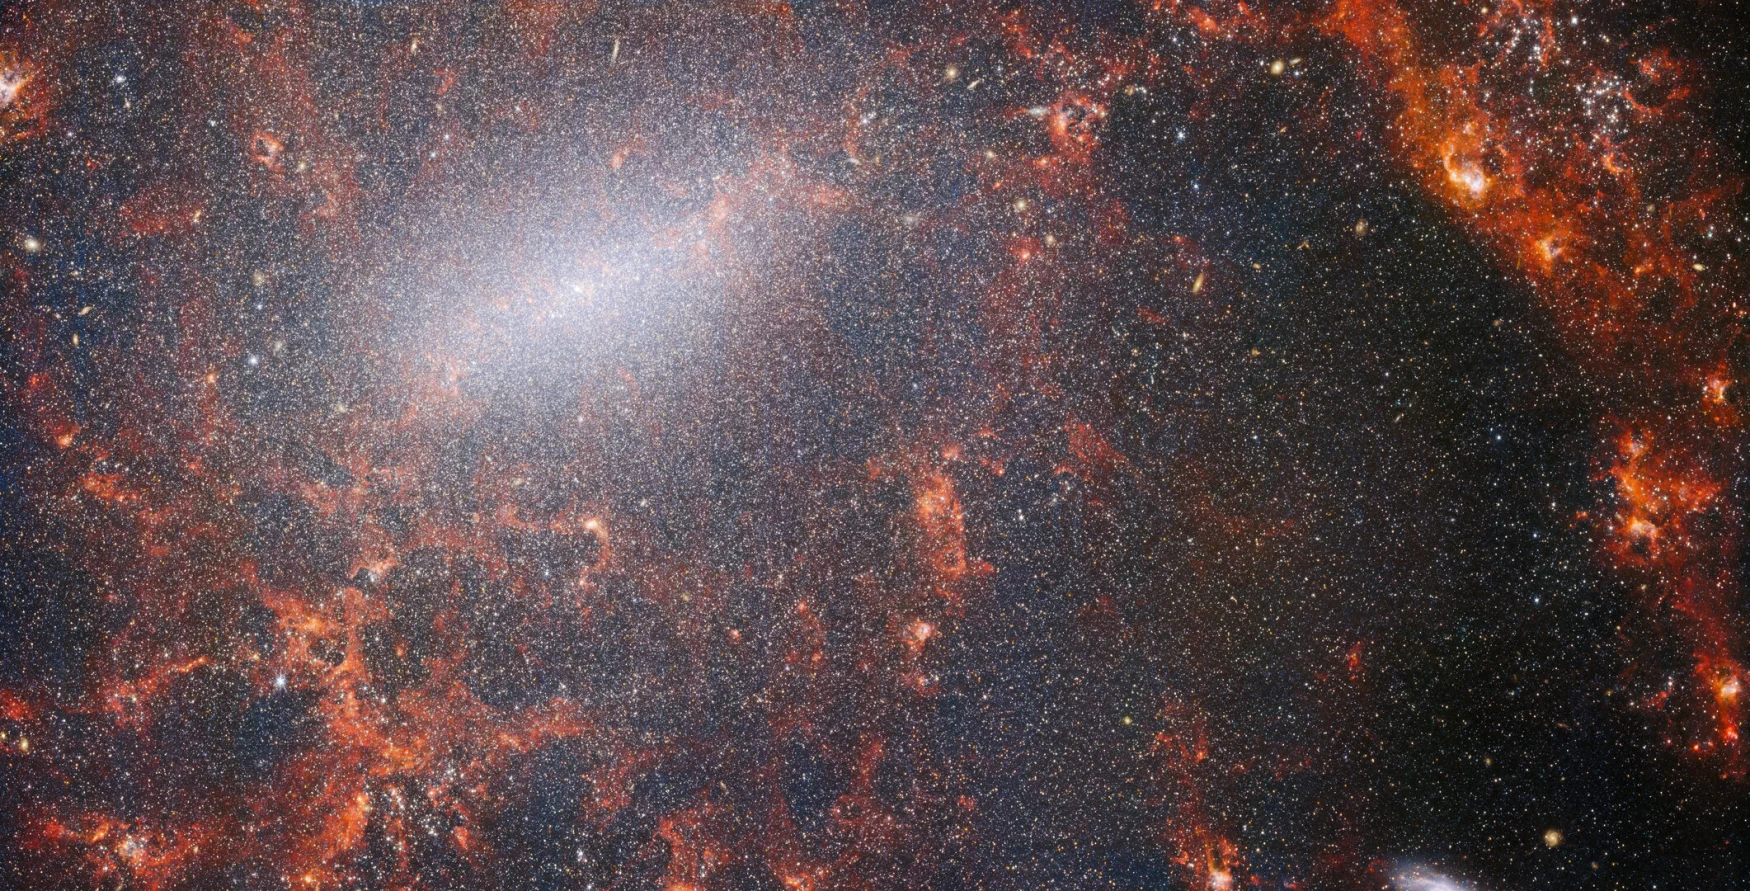 NASA/ESA/CSA James Webb Uzay Teleskobu'ndan alınan bu görüntüde ince toz iplikçikleri ve parlak yıldız kümeleri görülüyor.  Webb'in NIRCam cihazından alınan bu görüntü, galaksinin parlak merkezi çubuğu boyunca en yoğun şekilde toplanmış olan devasa yıldız kümesiyle ve içindeki genç yıldızlar tarafından aydınlatılan parlak kırmızı gaz bulutlarıyla bezenmiştir.  Bu parıldayan yıldızlar, Başak takımyıldızında Dünya'dan yaklaşık 17 milyon ışıkyılı uzaklıkta yer alan bariyer sarmal gökada NGC 5068'e aittir.  NGC 5068'in bu görüntüsü, yakın gökadalardaki yıldız oluşumu gözlemleri için bir depo olan bir astronomi hazinesi yaratma kampanyasının bir parçasıdır.  Bu koleksiyondan önceki mücevherler burada ve burada görülebilir.  Bu gözlemler astronomlar için iki nedenden dolayı özellikle değerlidir.  Birincisi, yıldız oluşumu, zayıf yıldızlararası plazmaların fiziğinden tüm galaksilerin evrimine kadar astronomideki birçok alanın temelini oluşturuyor.  Gökbilimciler, yakın galaksilerdeki yıldız oluşumunu gözlemleyerek, Webb'den elde edilen ilk verilerin bazılarıyla büyük bir bilimsel ilerleme başlatmayı umuyorlar.  İkinci neden, Webb'in gözlemlerinin NASA/ESA Hubble Uzay Teleskobu ve dünyanın en yetenekli yer tabanlı gözlemevlerinden bazıları dahil olmak üzere teleskopların kullanıldığı diğer çalışmalara dayanmasıdır.  Webb, gökbilimcilerin daha sonra Hubble'ın 10.000 yıldız kümesi kataloğuyla birleştirebildiği, Çok Büyük Teleskop'tan (VLT) 20.000 yıldız salma bulutsusunun spektral haritasını çıkardığı ve karanlık bulutsulardan 12.000 tanesini gözlemleyebildiği yakınlardaki 19 yıldız oluşturan gökadanın görüntülerini topladı.  , Atacama Büyük Milimetre/Milimetre-altı Dizisi (ALMA) tarafından tanımlanan yoğun moleküler bulutlar.  Bu gözlemler elektromanyetik spektrumu kapsıyor ve gökbilimcilere yıldız oluşumunun ayrıntılarını bir araya getirmek için benzeri görülmemiş bir fırsat veriyor.  Galaksinin bu yakın-kızılötesi görüntüsü, NGC 5068'in çekirdeğini oluşturan devasa antik yıldız kümesiyle doludur. NIRCam'ın keskin görüşü, astronomların galaksinin gazını ve tozunu delip geçerek yıldızlarını daha yakından incelemesini sağlar.  Sarmal kolların yolu boyunca yoğun, parlak toz bulutları vardır: bunlar, yeni yıldızların oluştuğu hidrojen gazı kümeleri olan H II bölgeleridir.  Aktif, enerjik yıldızlar, etraflarındaki hidrojeni iyonlaştırır ve bu, sıcak toz emisyonuyla birleştiğinde bu kırmızımsı parıltıyı üretir.  H II bölgeleri astronomlar için harika bir hedef oluşturuyor ve Webb'in araçları onları incelemek için mükemmel araçlar, bu da bu görüntüyle sonuçlanıyor. [Image Description: A close-in image of a spiral galaxy, showing its core and part of a spiral arm. At this distance thousands upon thousands of tiny stars that make up the galaxy can be seen. The stars are most dense in a whitish bar that forms the core, and less dense out from that towards the arm. Bright red gas clouds follow the twist of the galaxy and the spiral arm.] Bağlantılar NGC 5068 (NIRCam + MIRI Görüntüsü) 